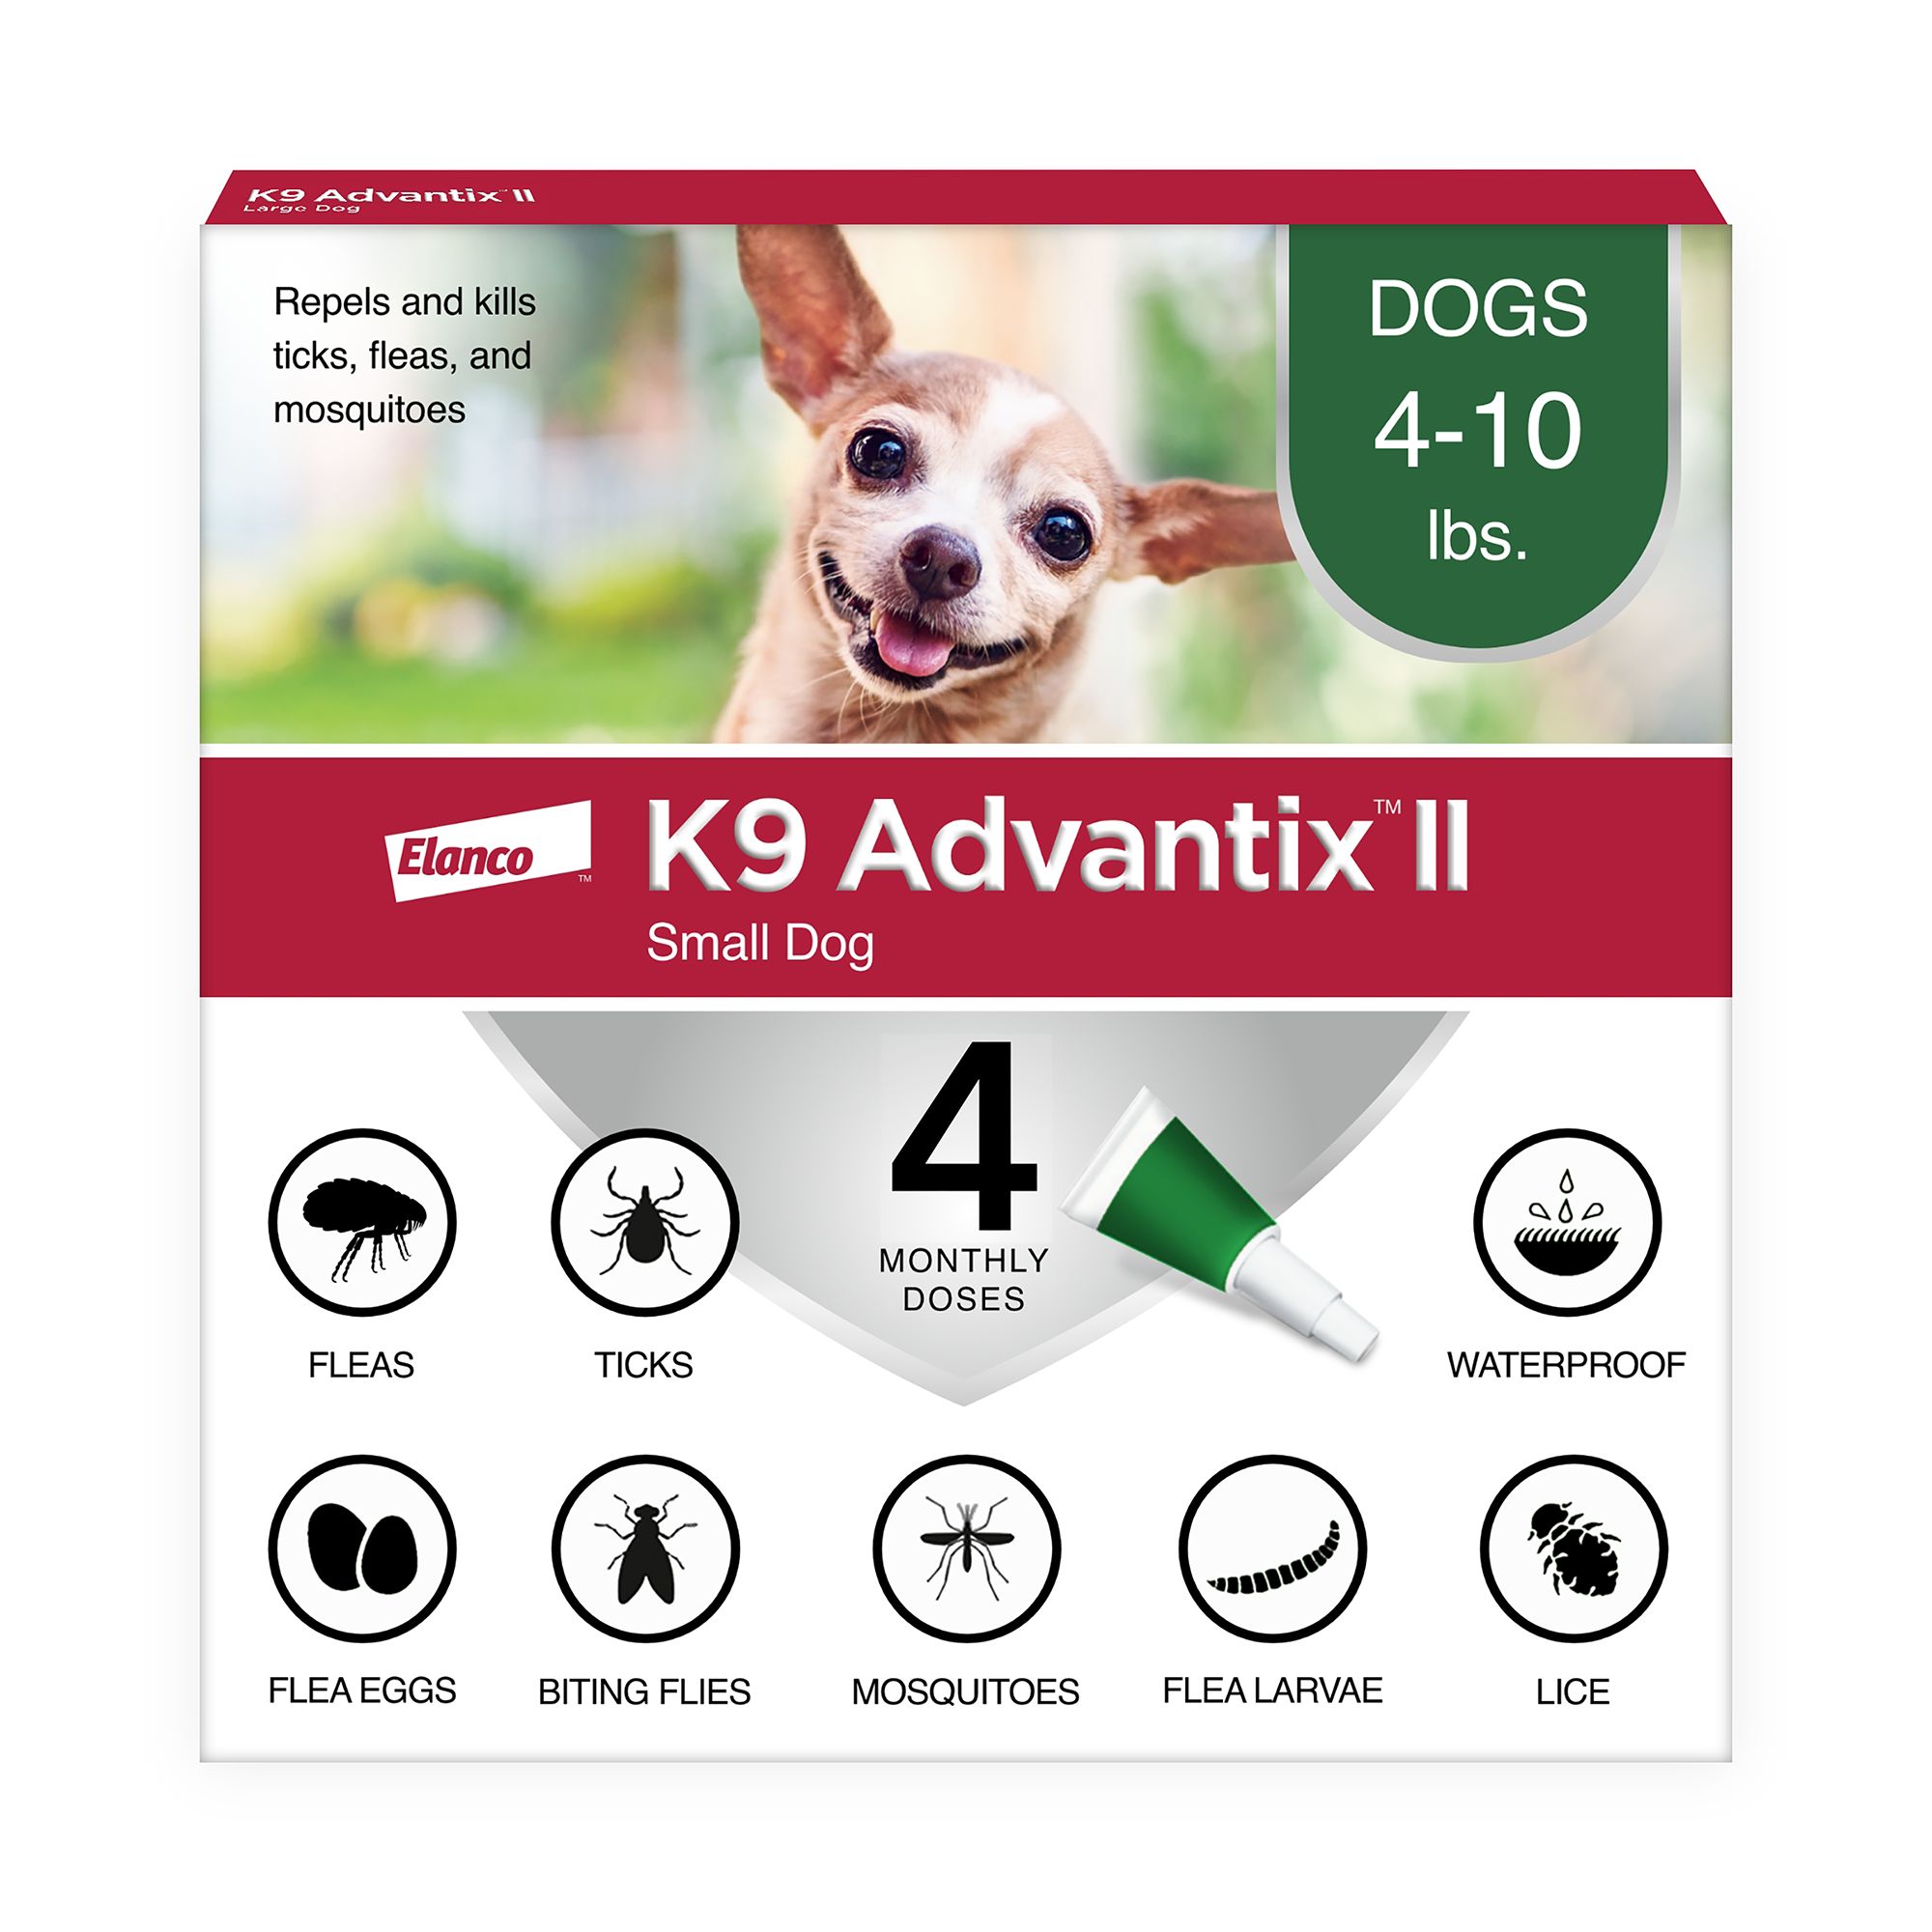 advantix 11 for small dogs